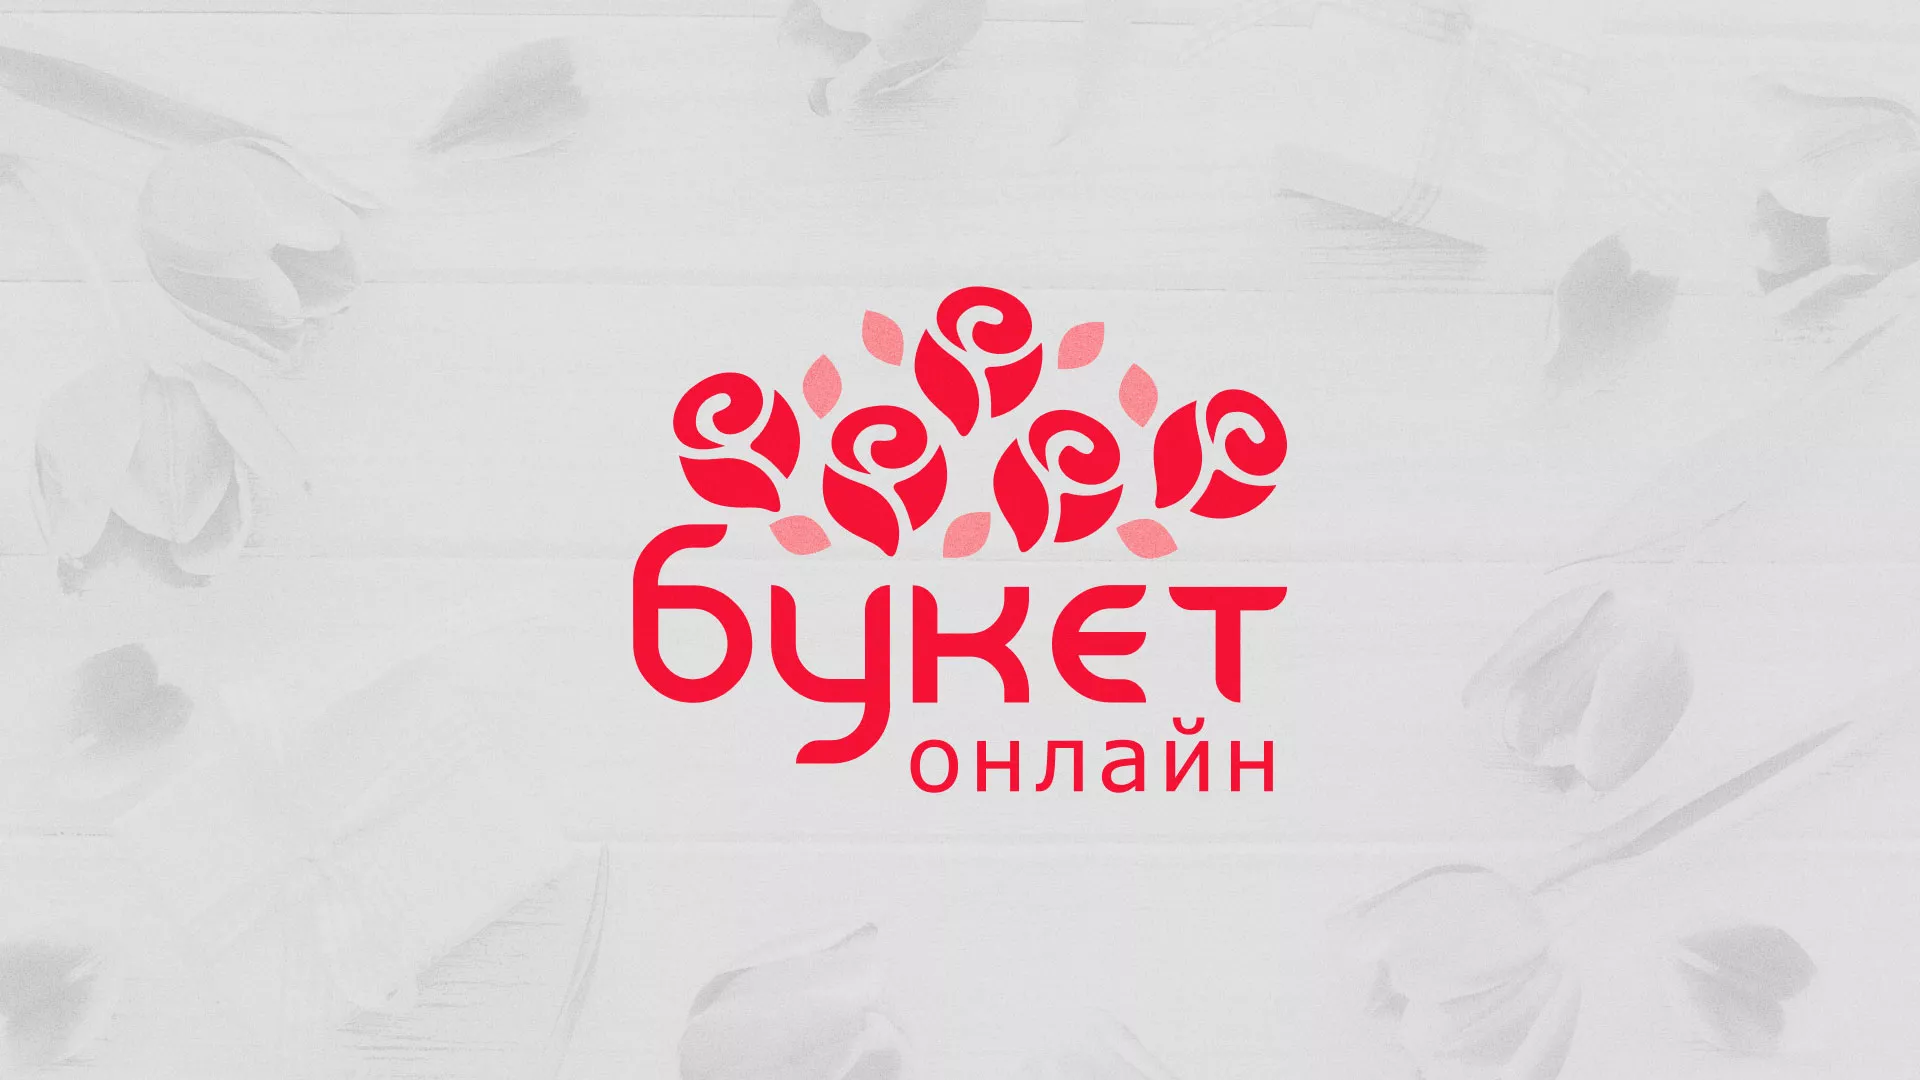 Создание интернет-магазина «Букет-онлайн» по цветам в Бабушкине